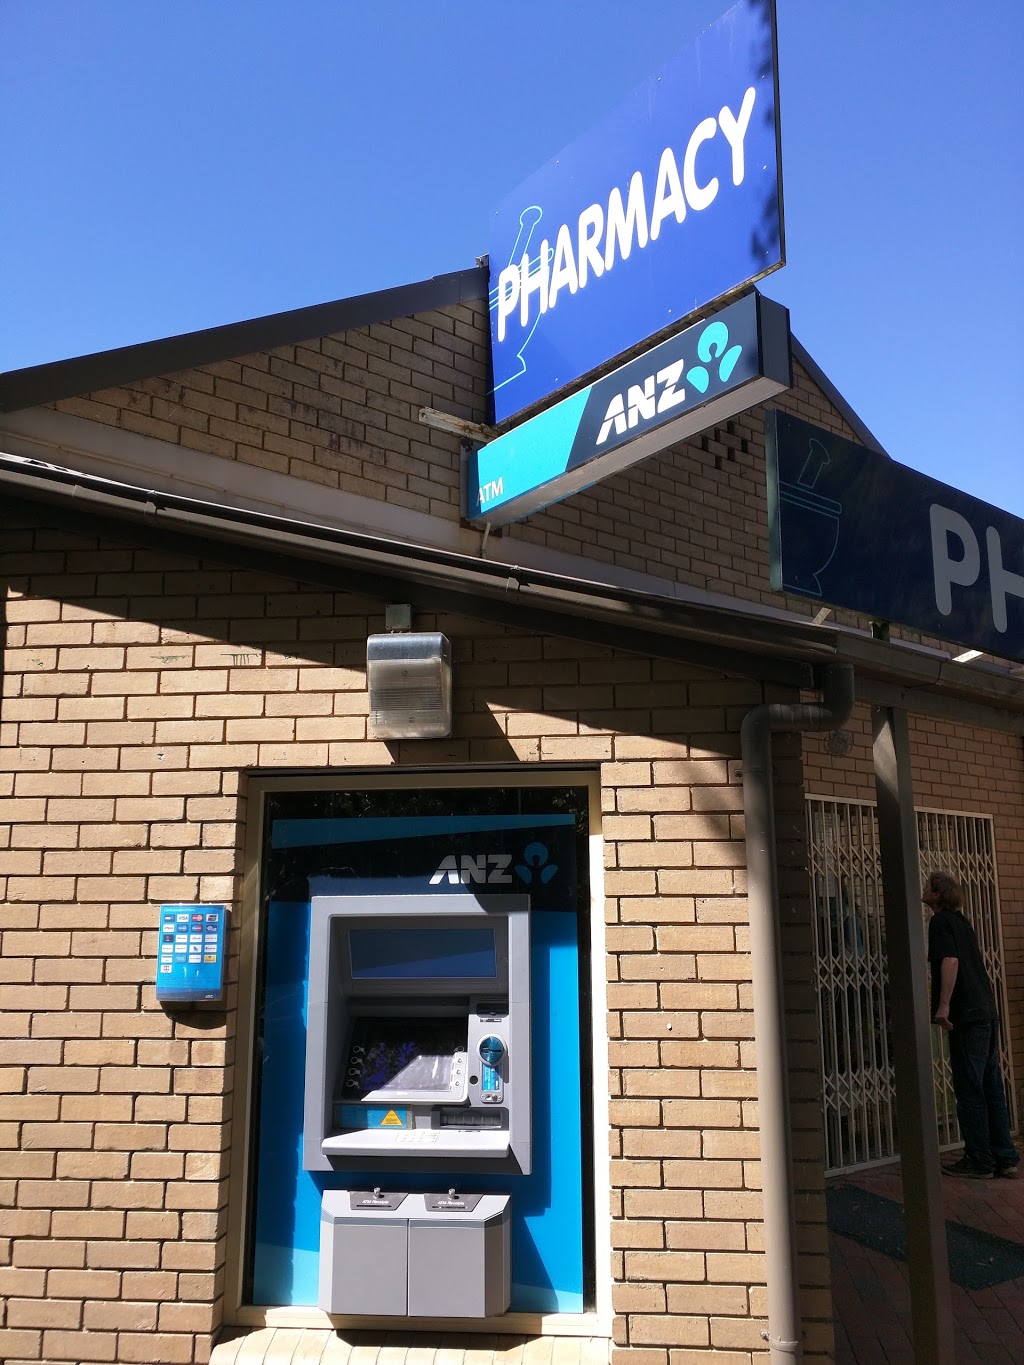 ANZ ATM Olinda Pharmacy | atm | 33 Monash Ave, Olinda VIC 3786, Australia | 131314 OR +61 131314